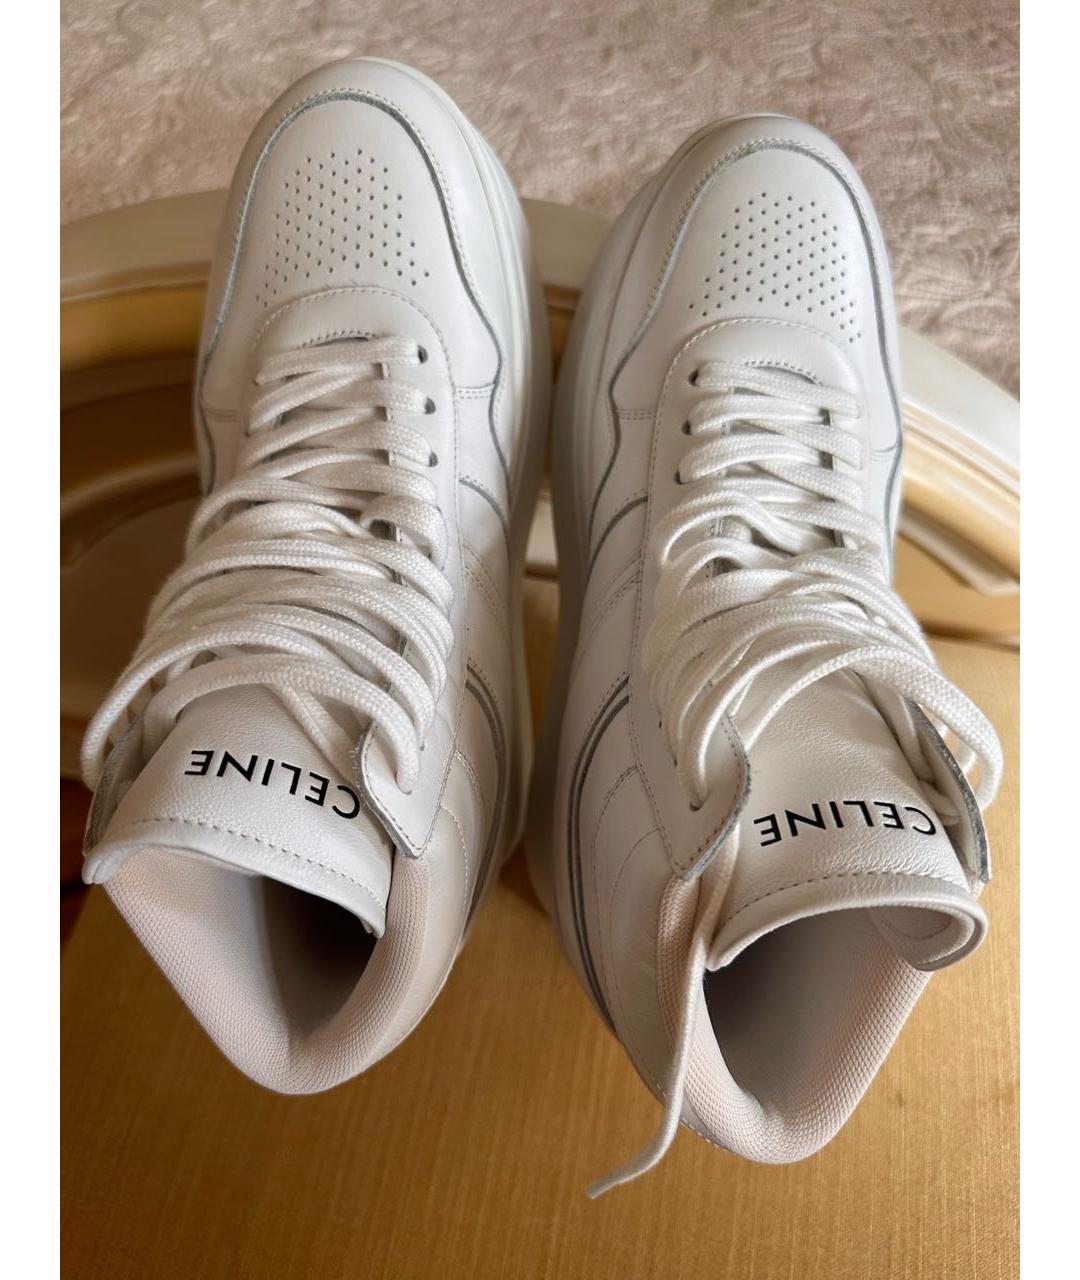 CELINE Белые кожаные кроссовки, фото 3